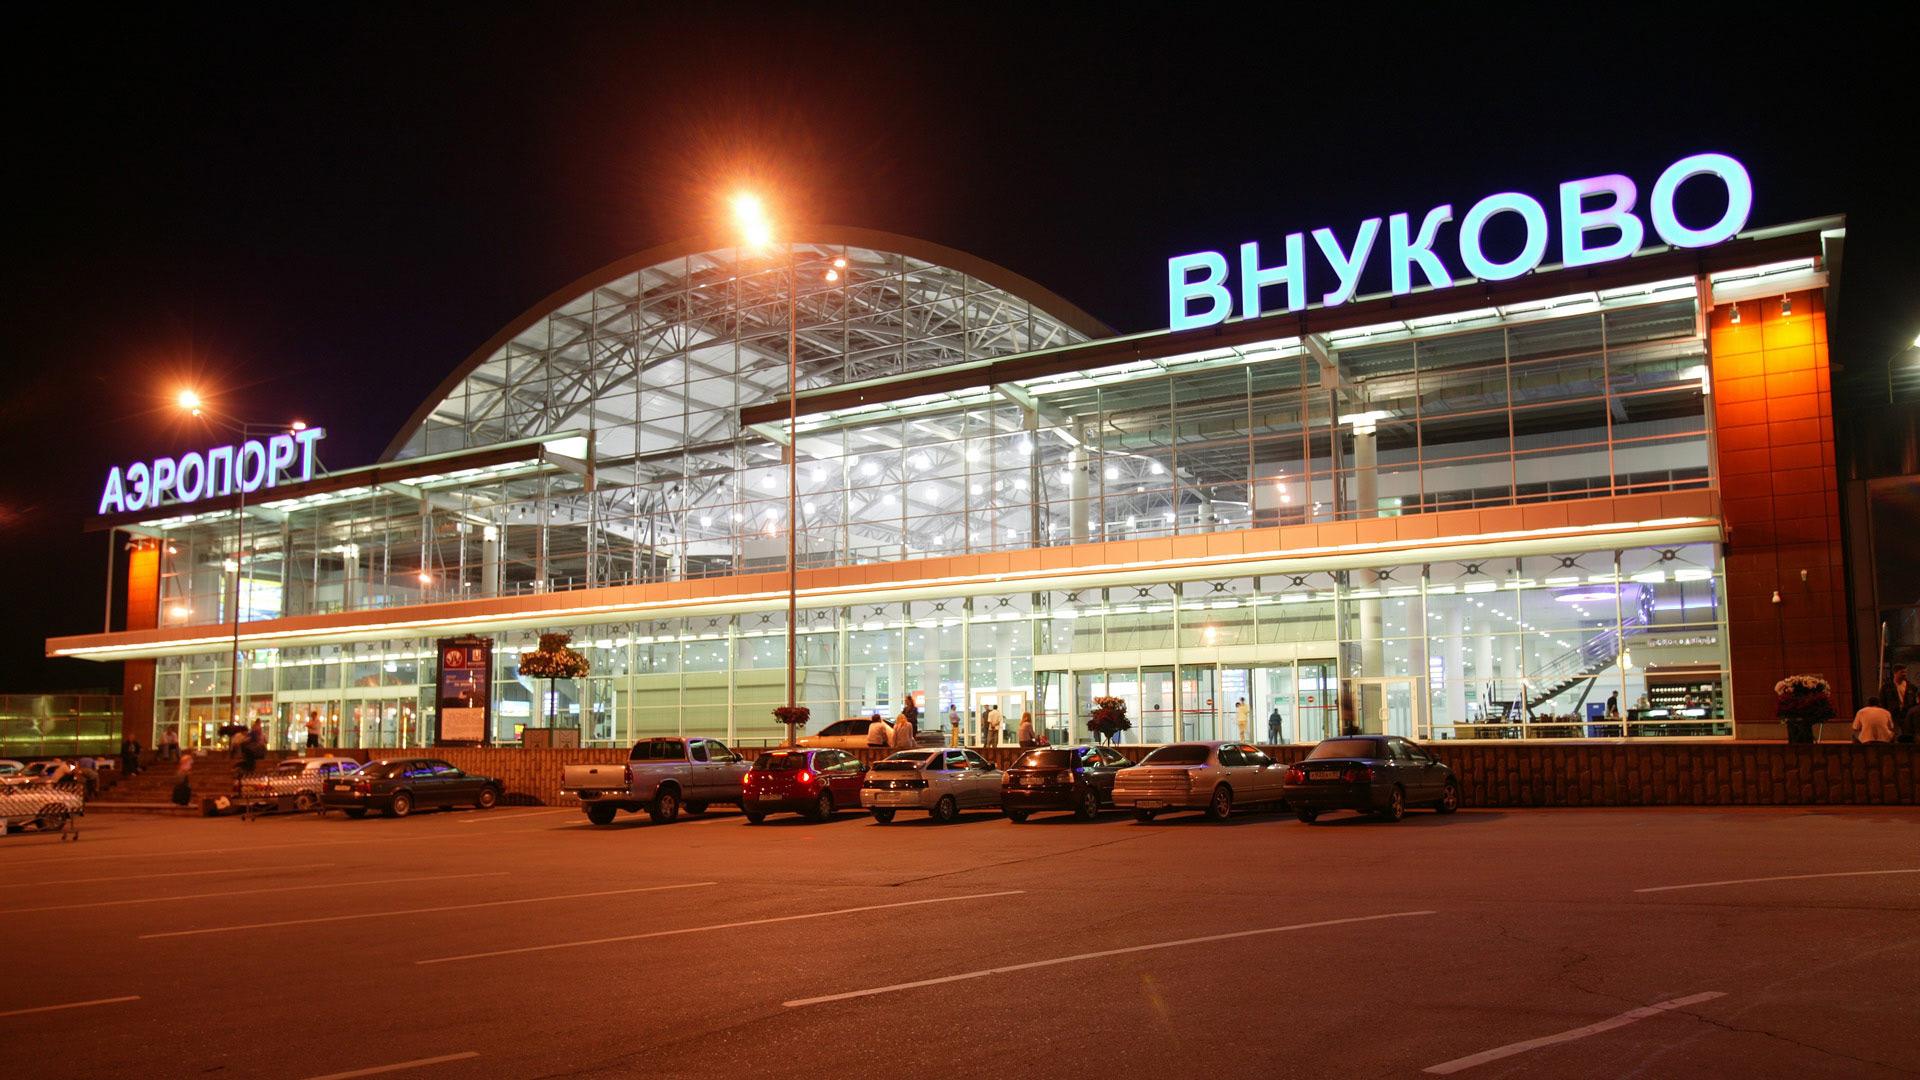 Ռուսաստանի «Վնուկովո» օդանավակայանում ձերբակալել են պայթյունավտանգ ուղեբեռով ուղևորին
